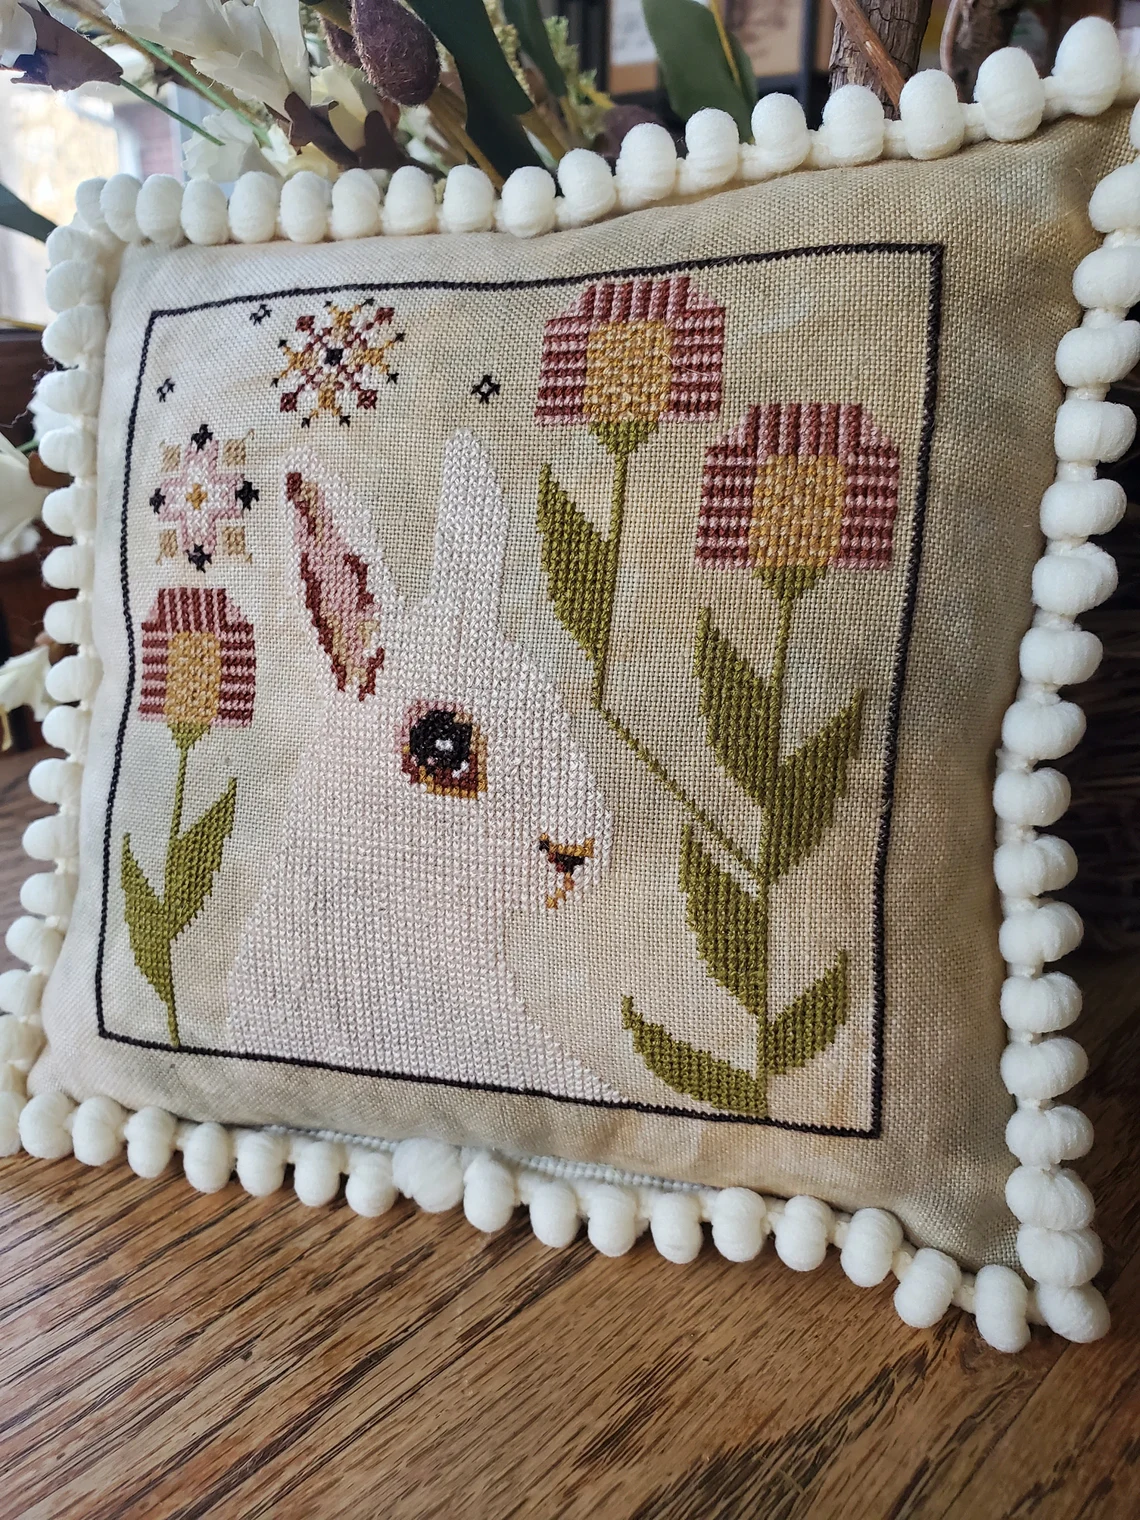 Bedelia Bunny | The Artsy Housewife